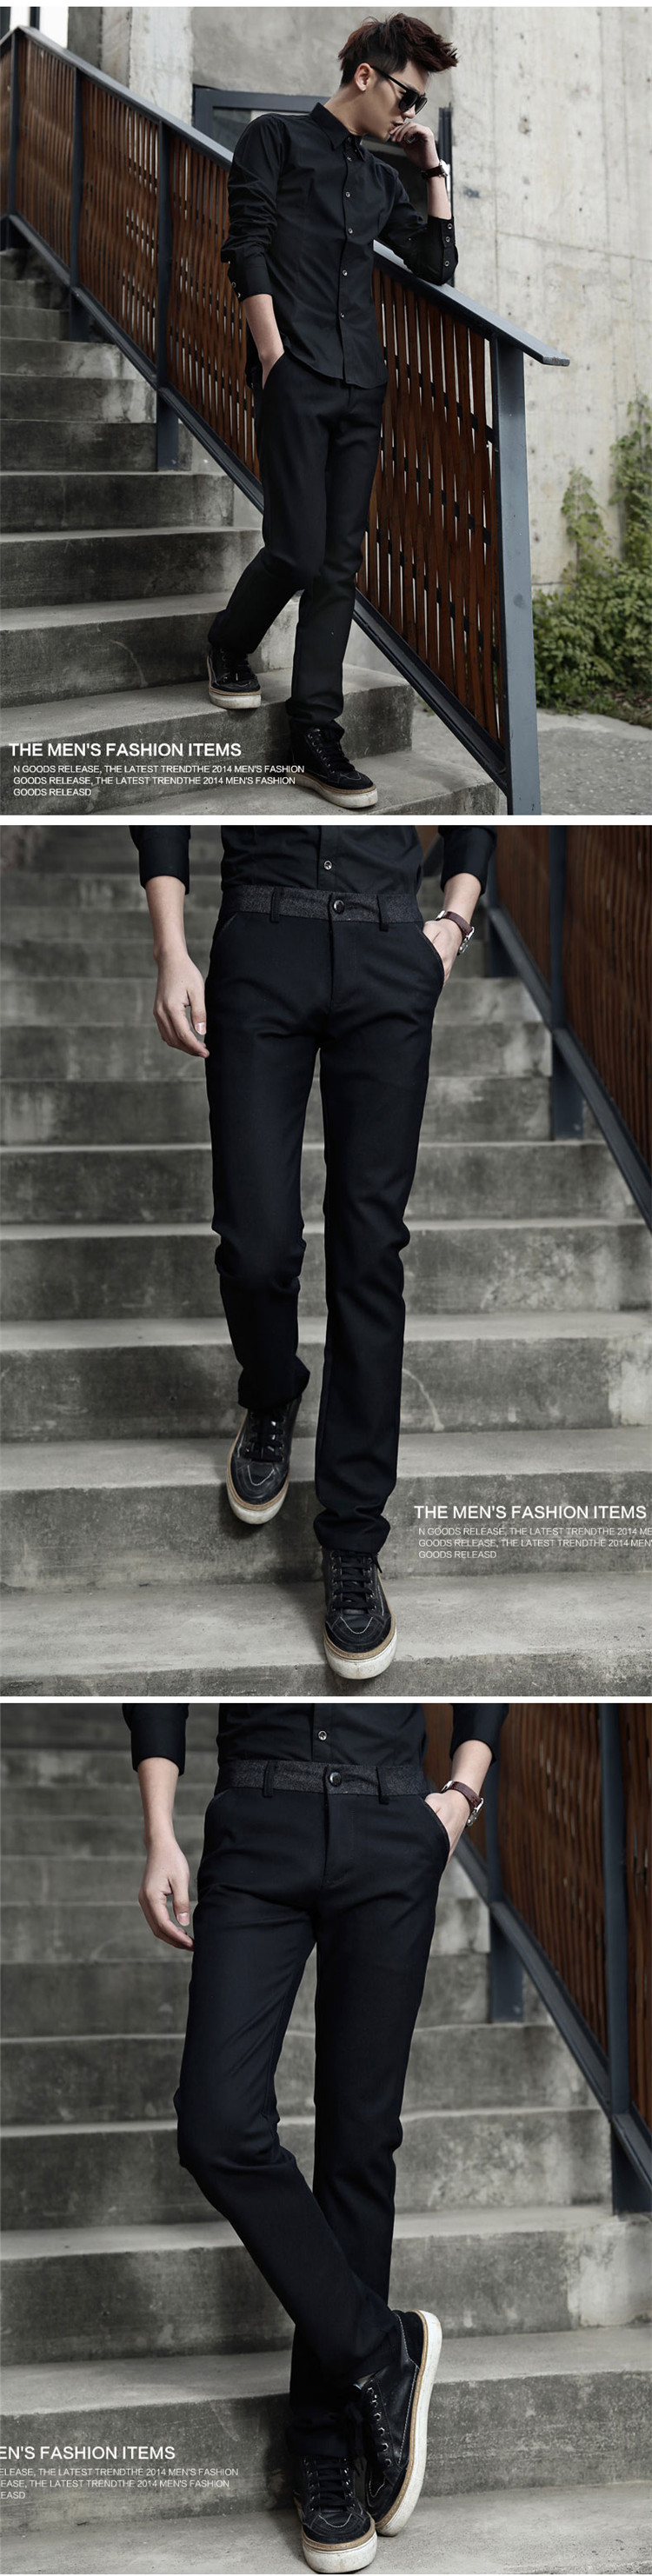 新款男士韩版休闲长裤男裤时尚西裤英伦修身商务长裤k15-117 f 黑色